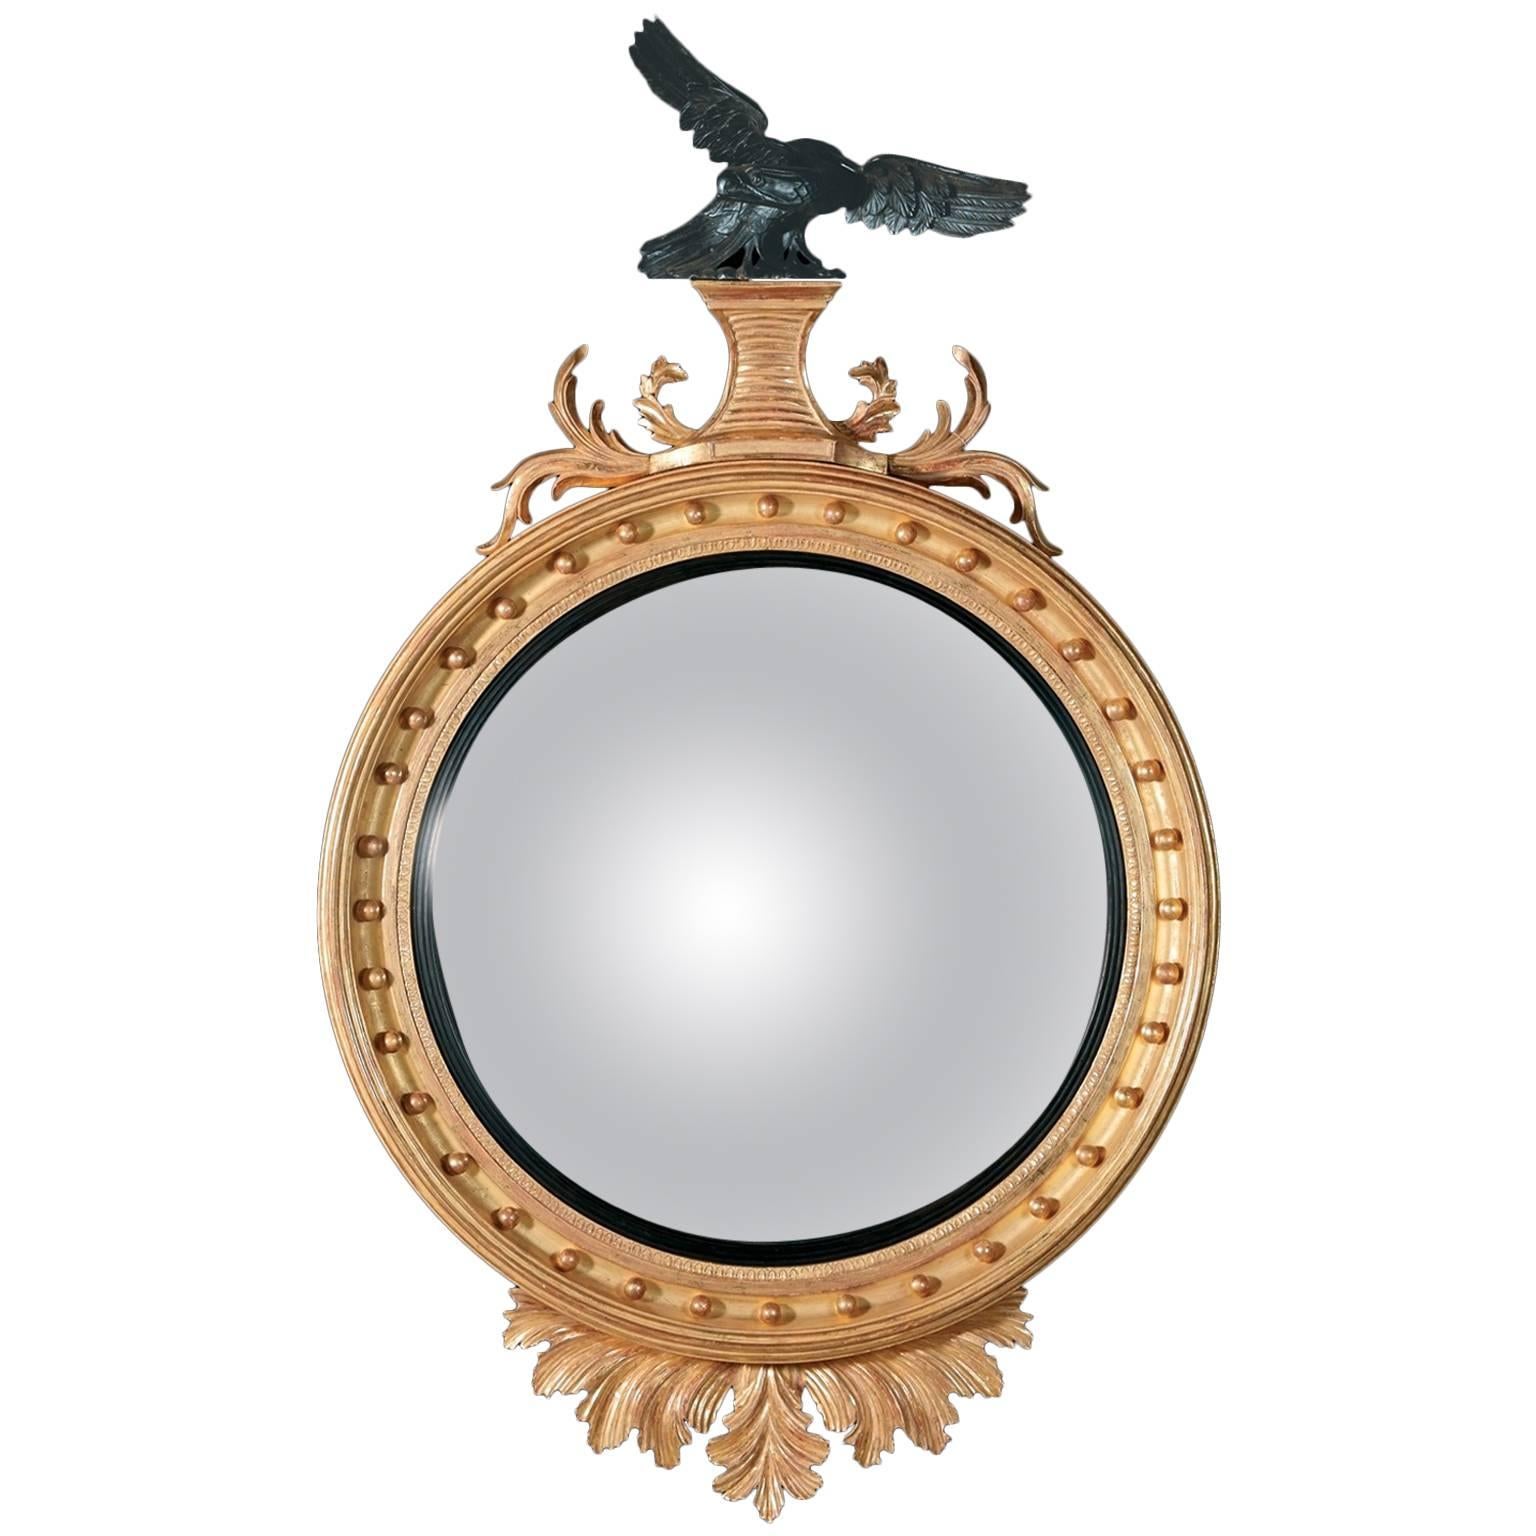 Eagle Convex Mirror in der Regency-Manier